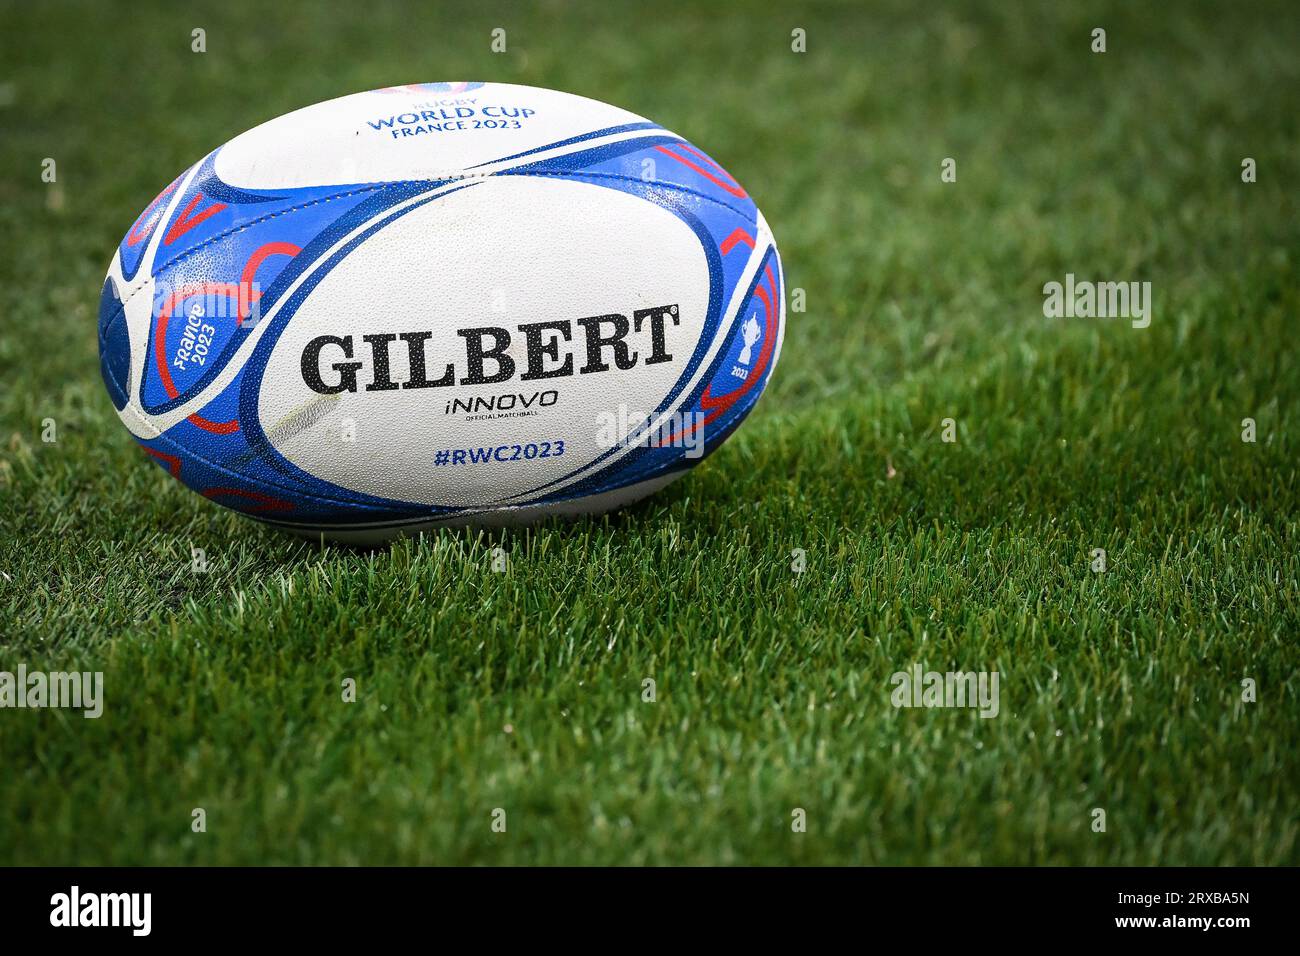 Ballon de Match Innovo - Coupe du Monde de Rugby 2023 – Gilbert Rugby France